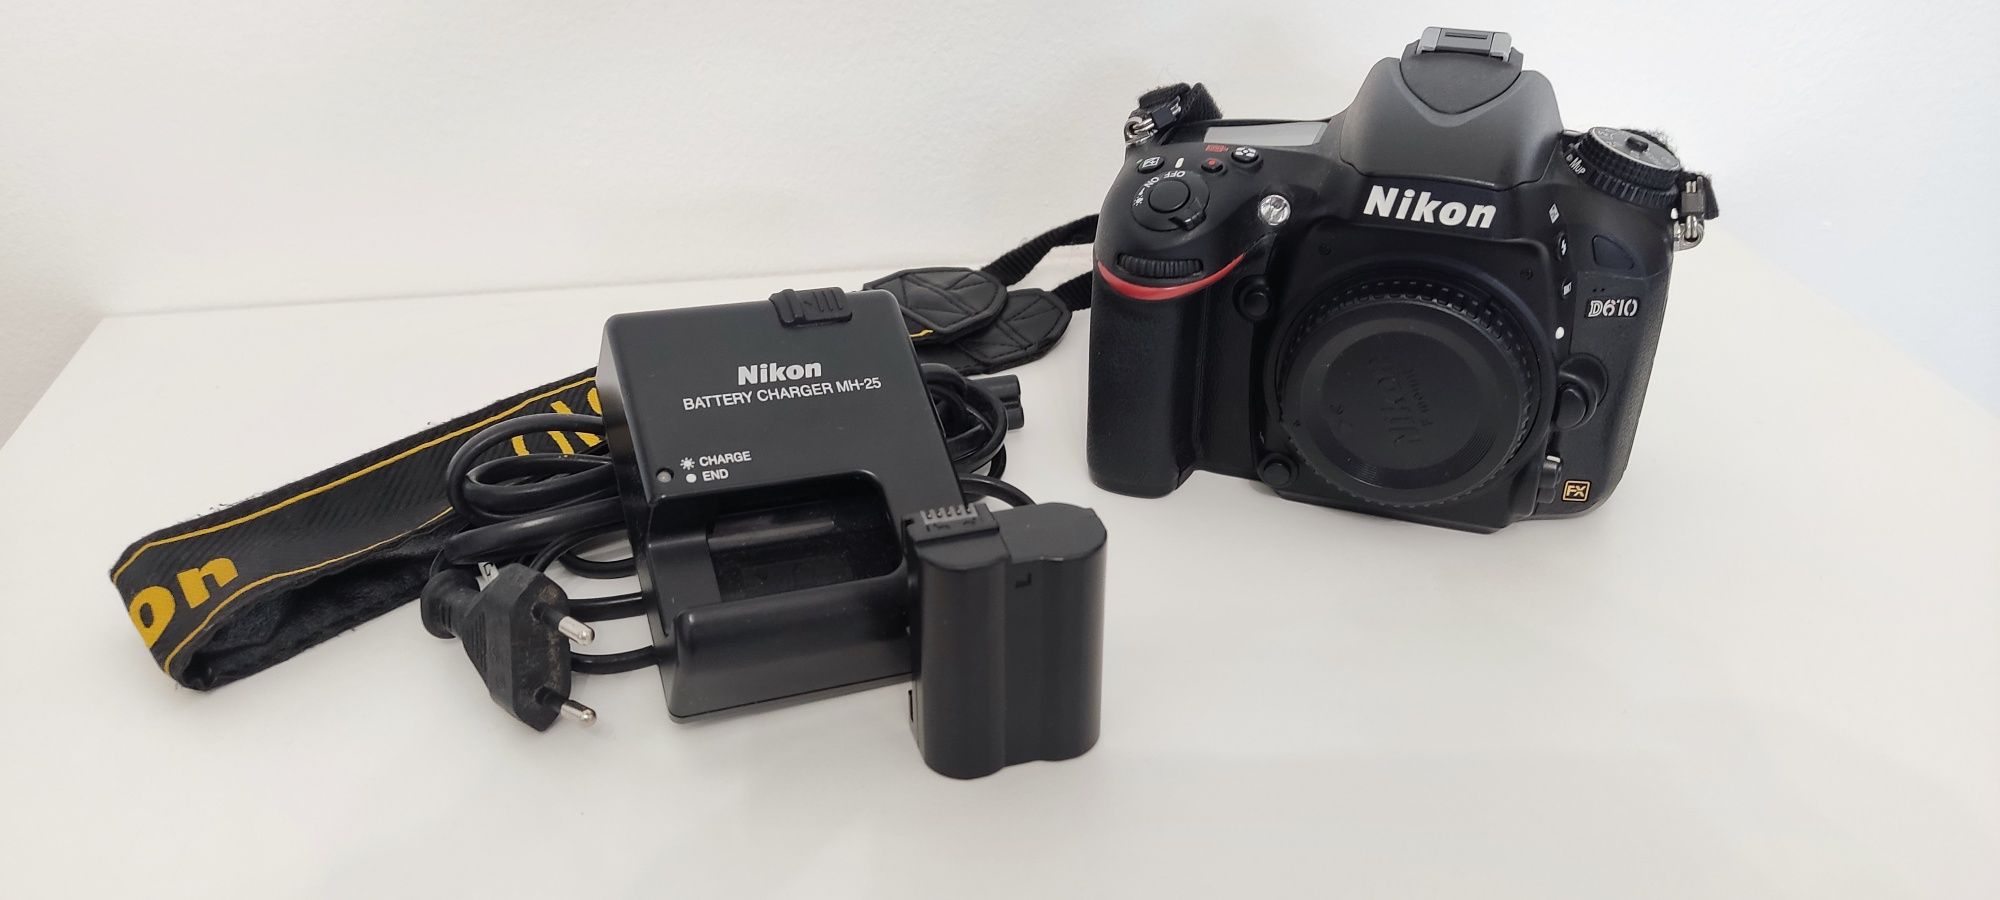 Nikon D610 full-frame